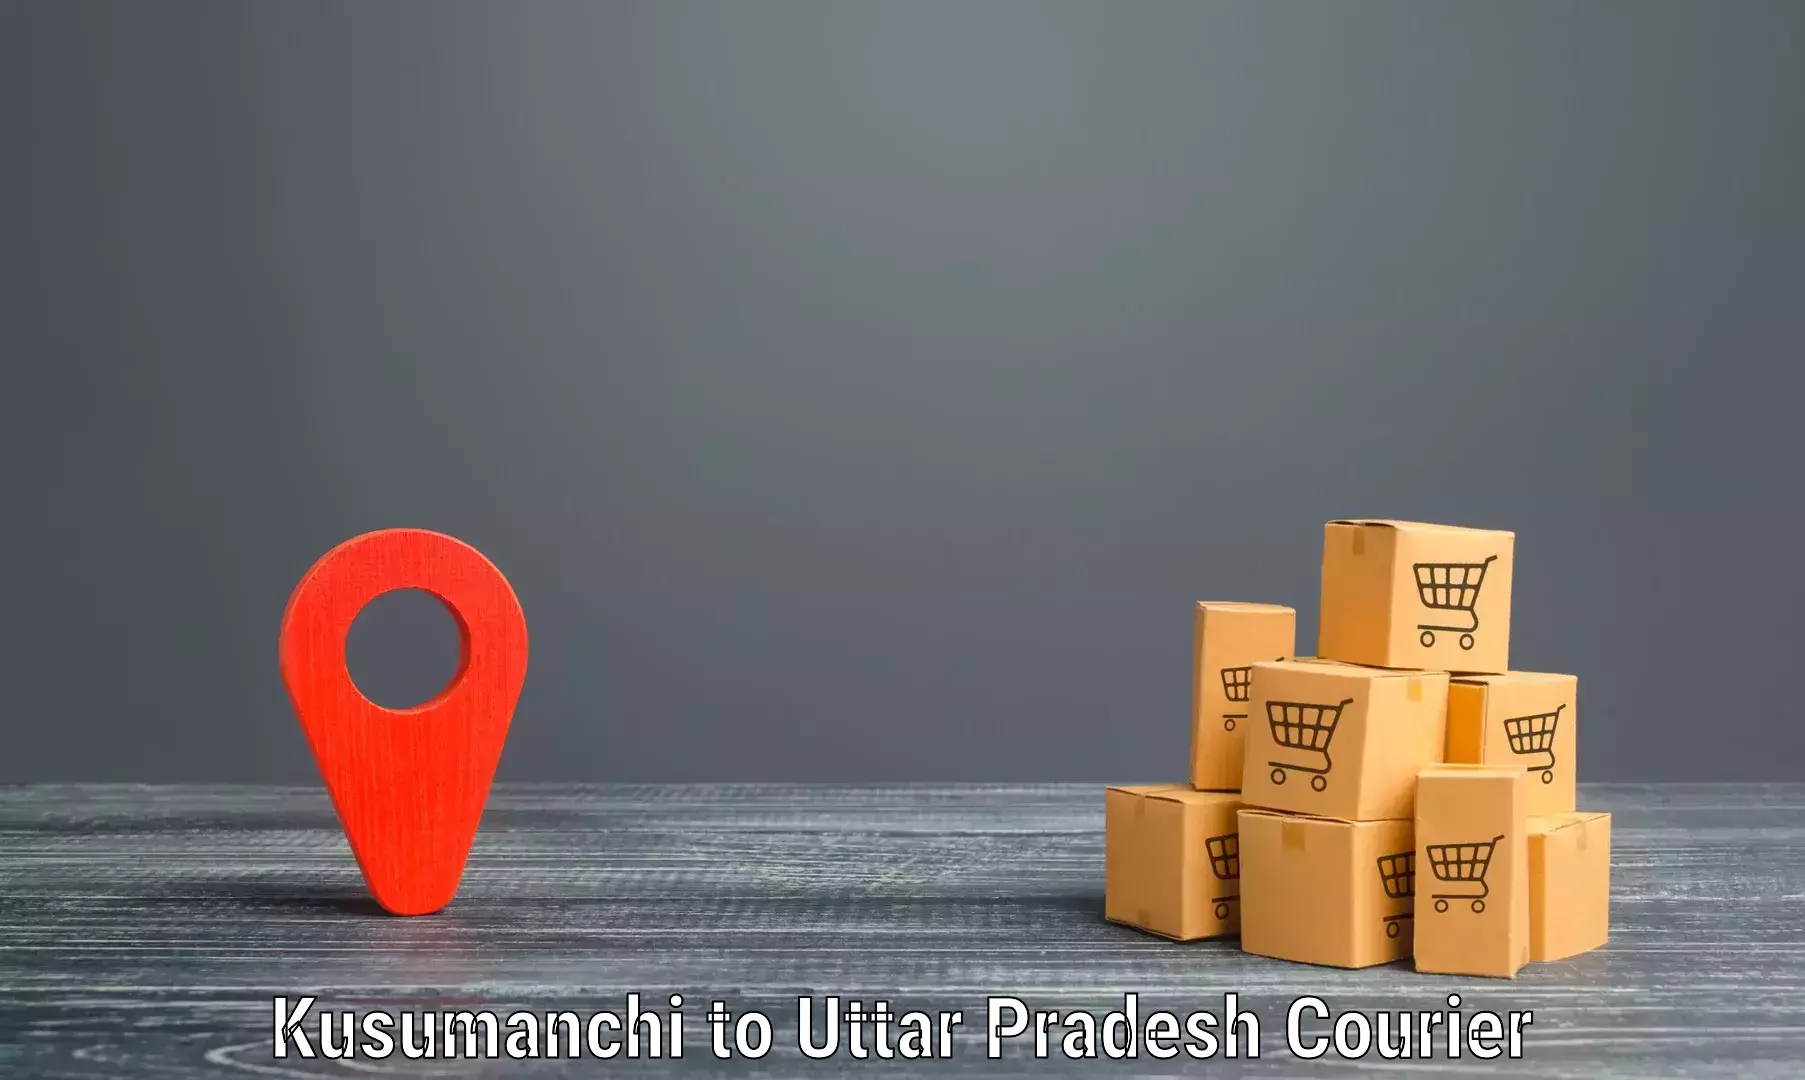 Online package tracking Kusumanchi to Mahasi